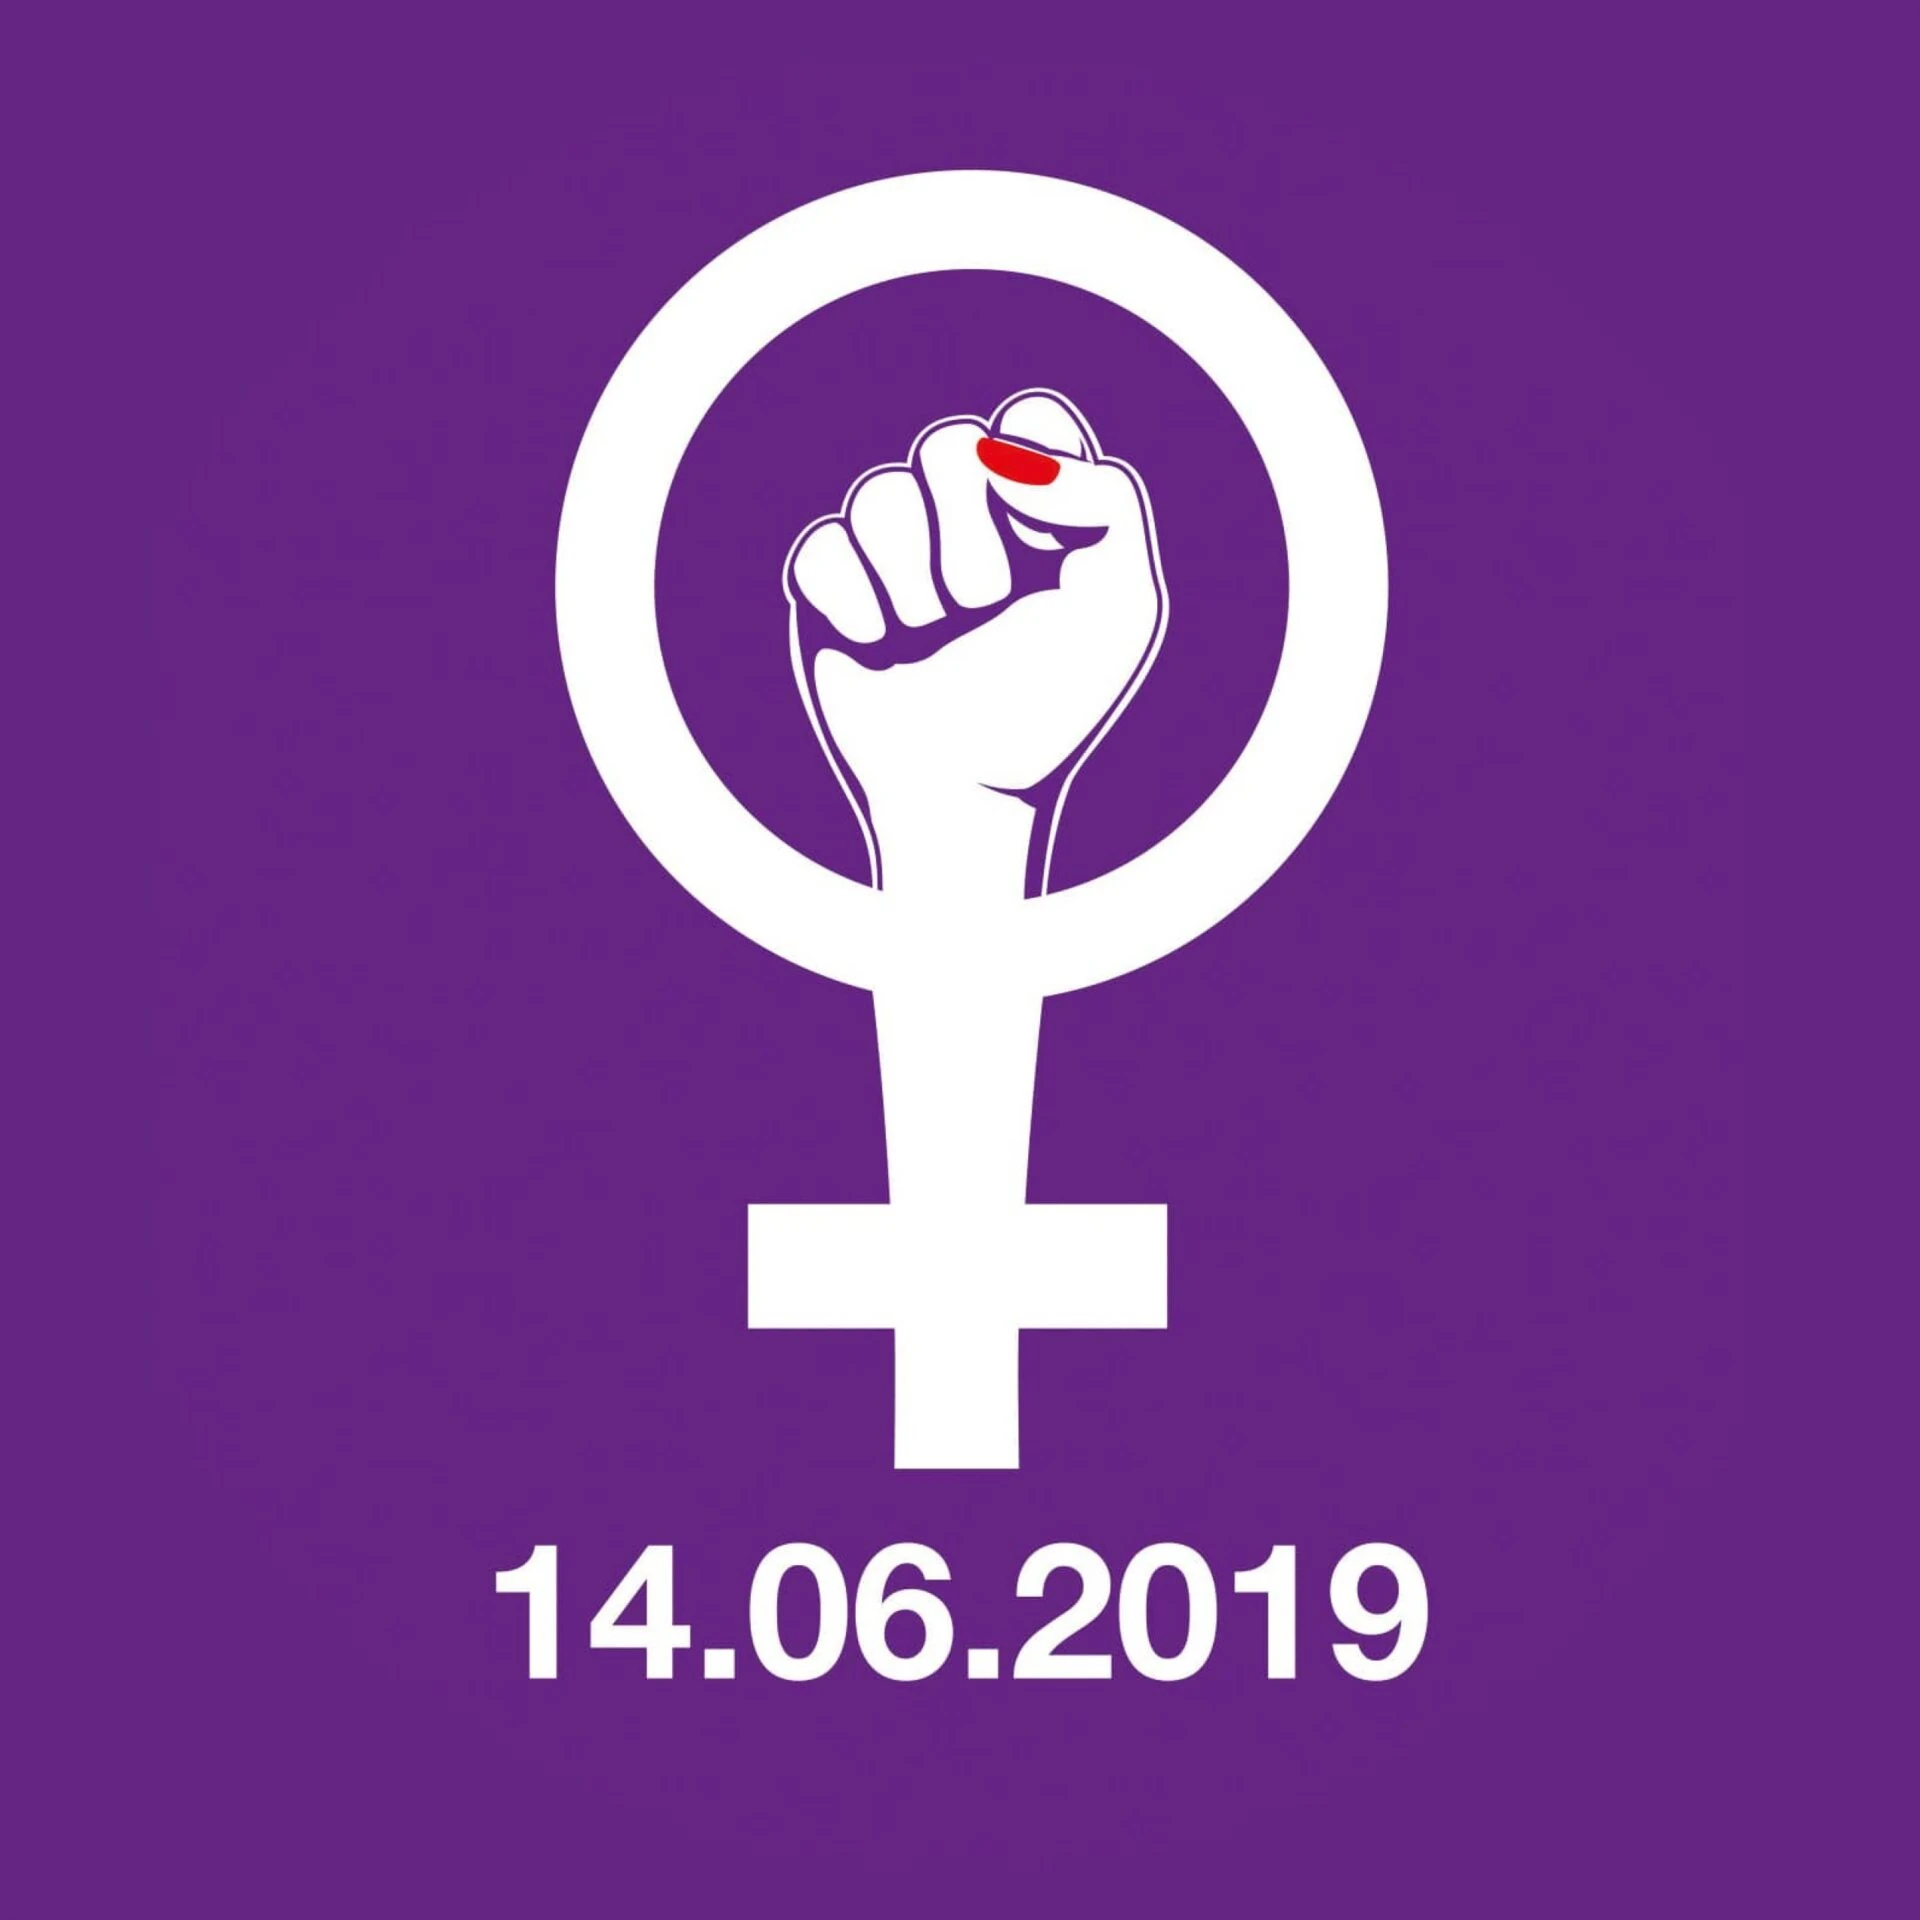 Frauenstreik 14.6. Faust-Logo auf violettem Grund